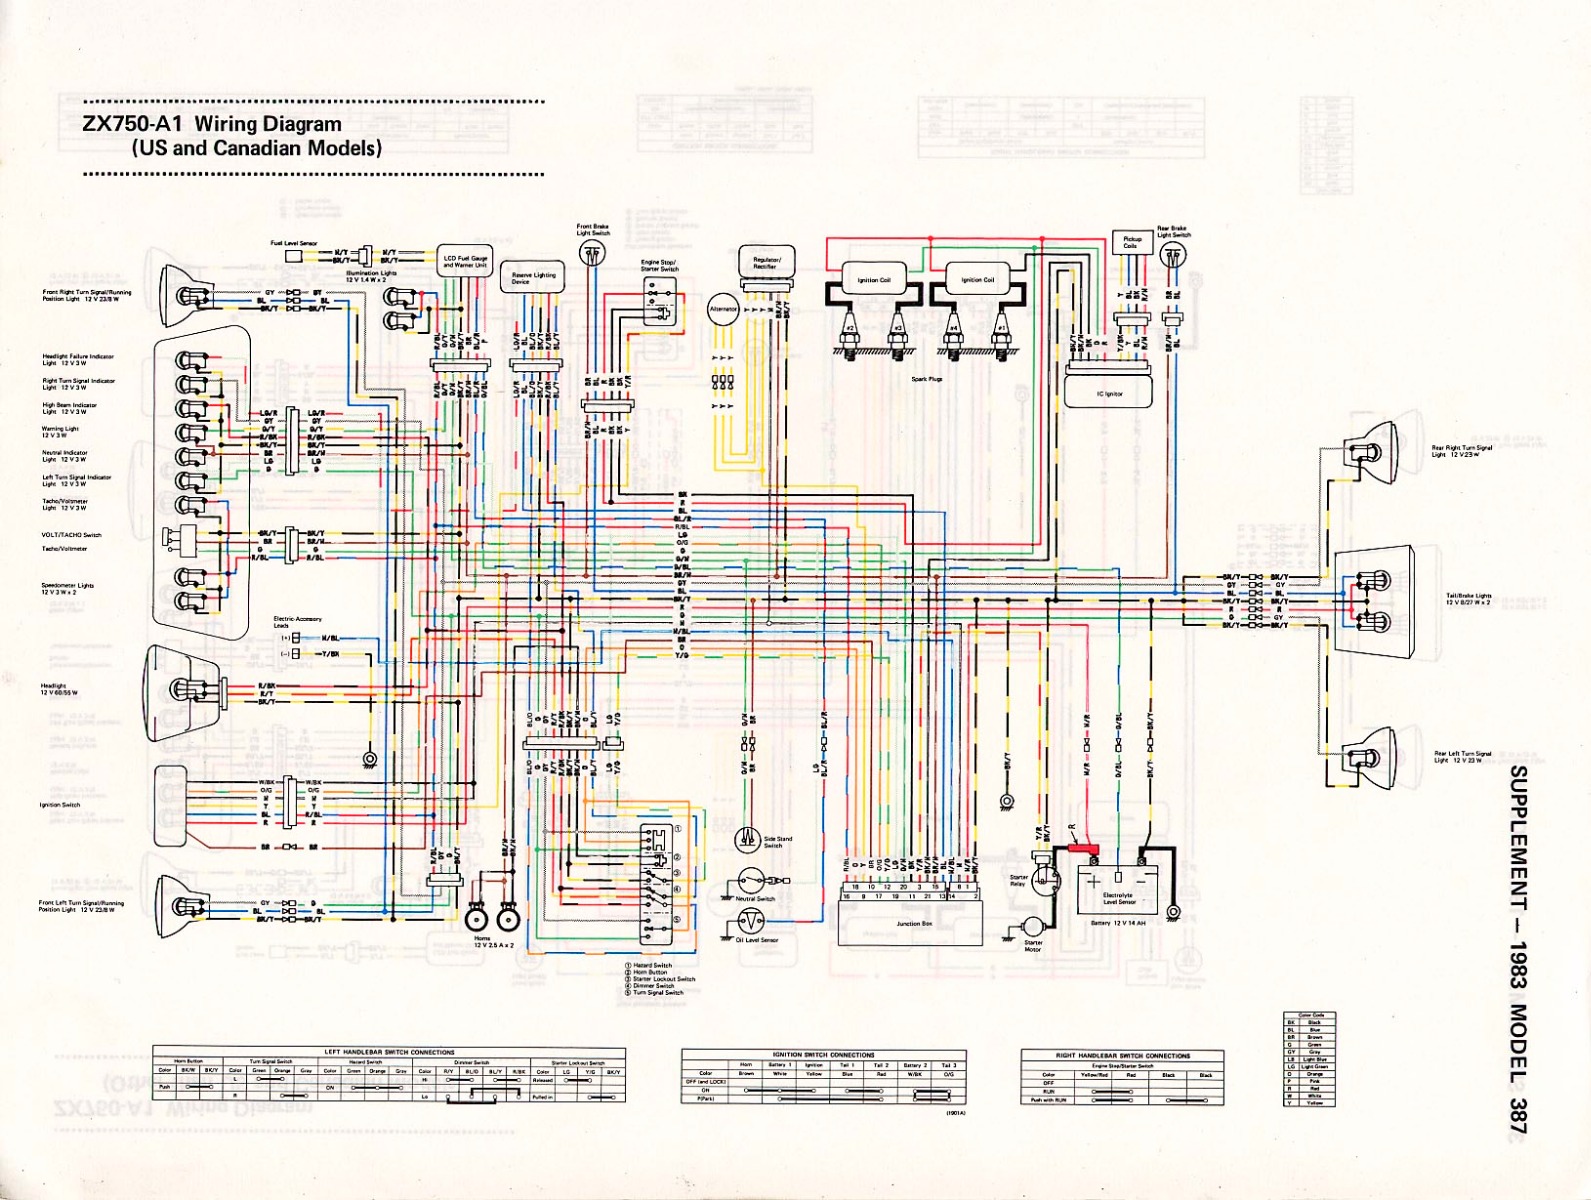 1983 gpz750 igniter wiring diagram - KZRider Forum - KZRider, KZ, Z1